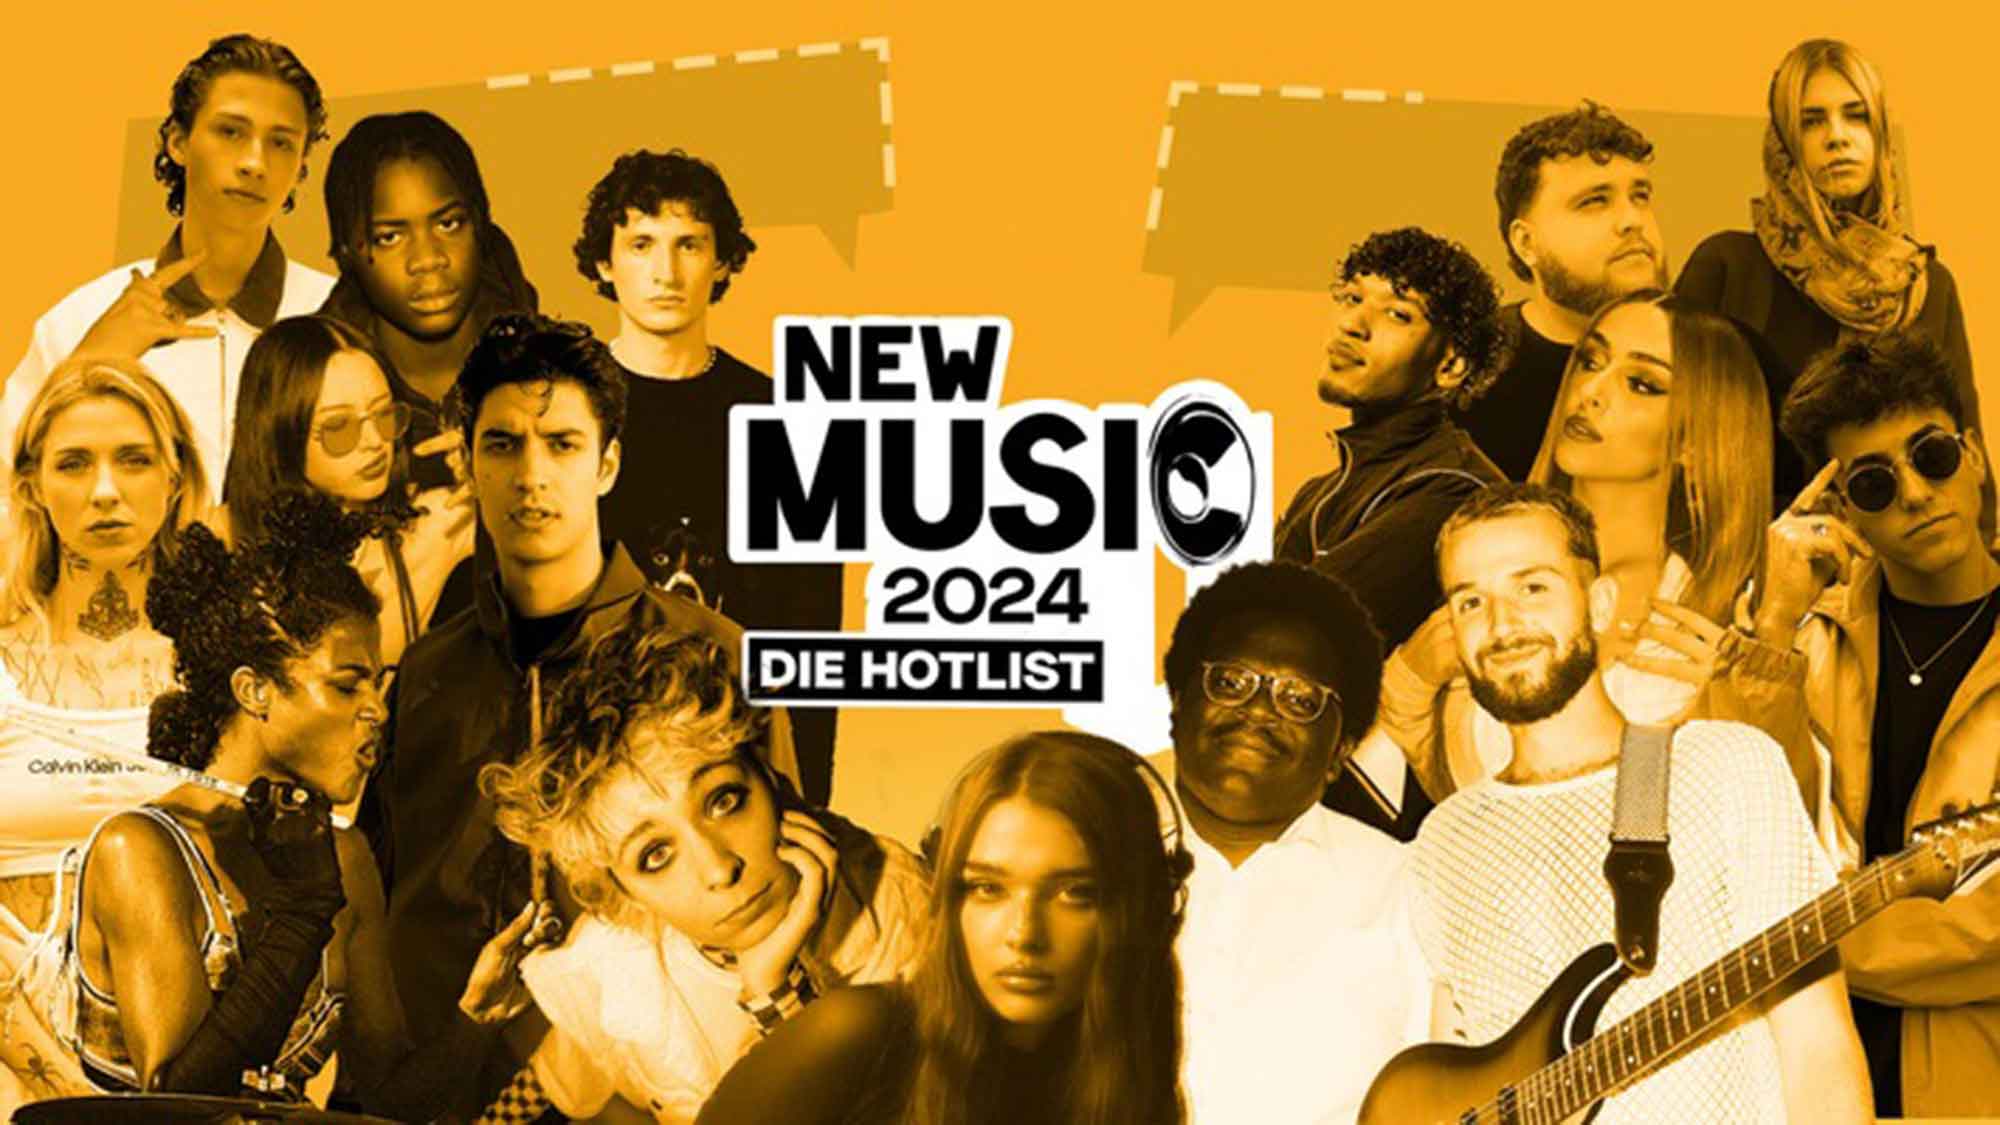 »New Music 2024« Hotlist: Die jungen Programme der ARD und Deutschlandfunk Nova präsentieren die künftigen Musikstars